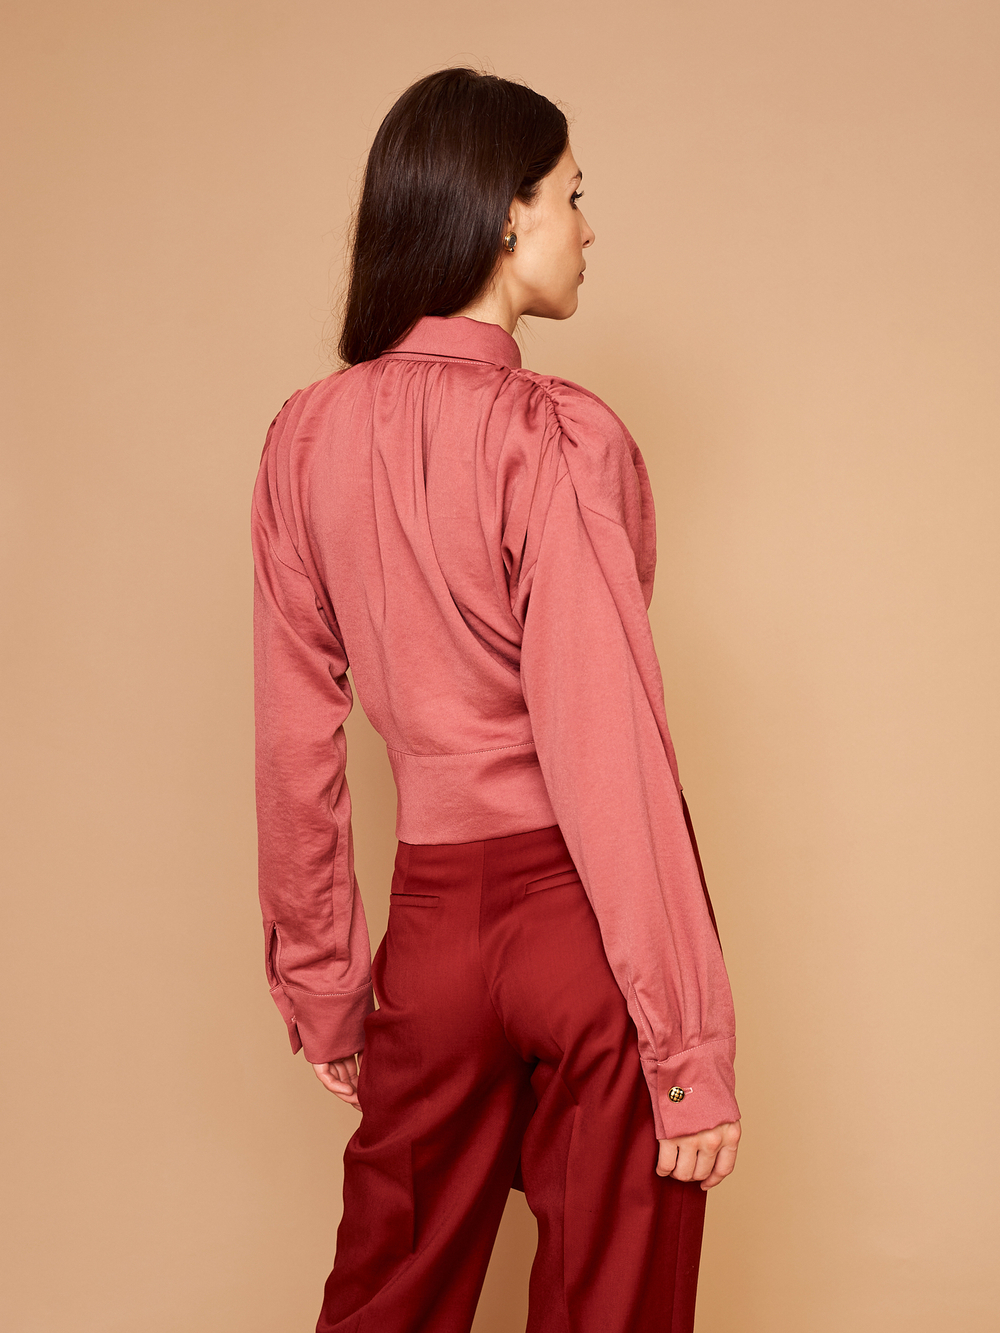 Блуза с поясом розовая